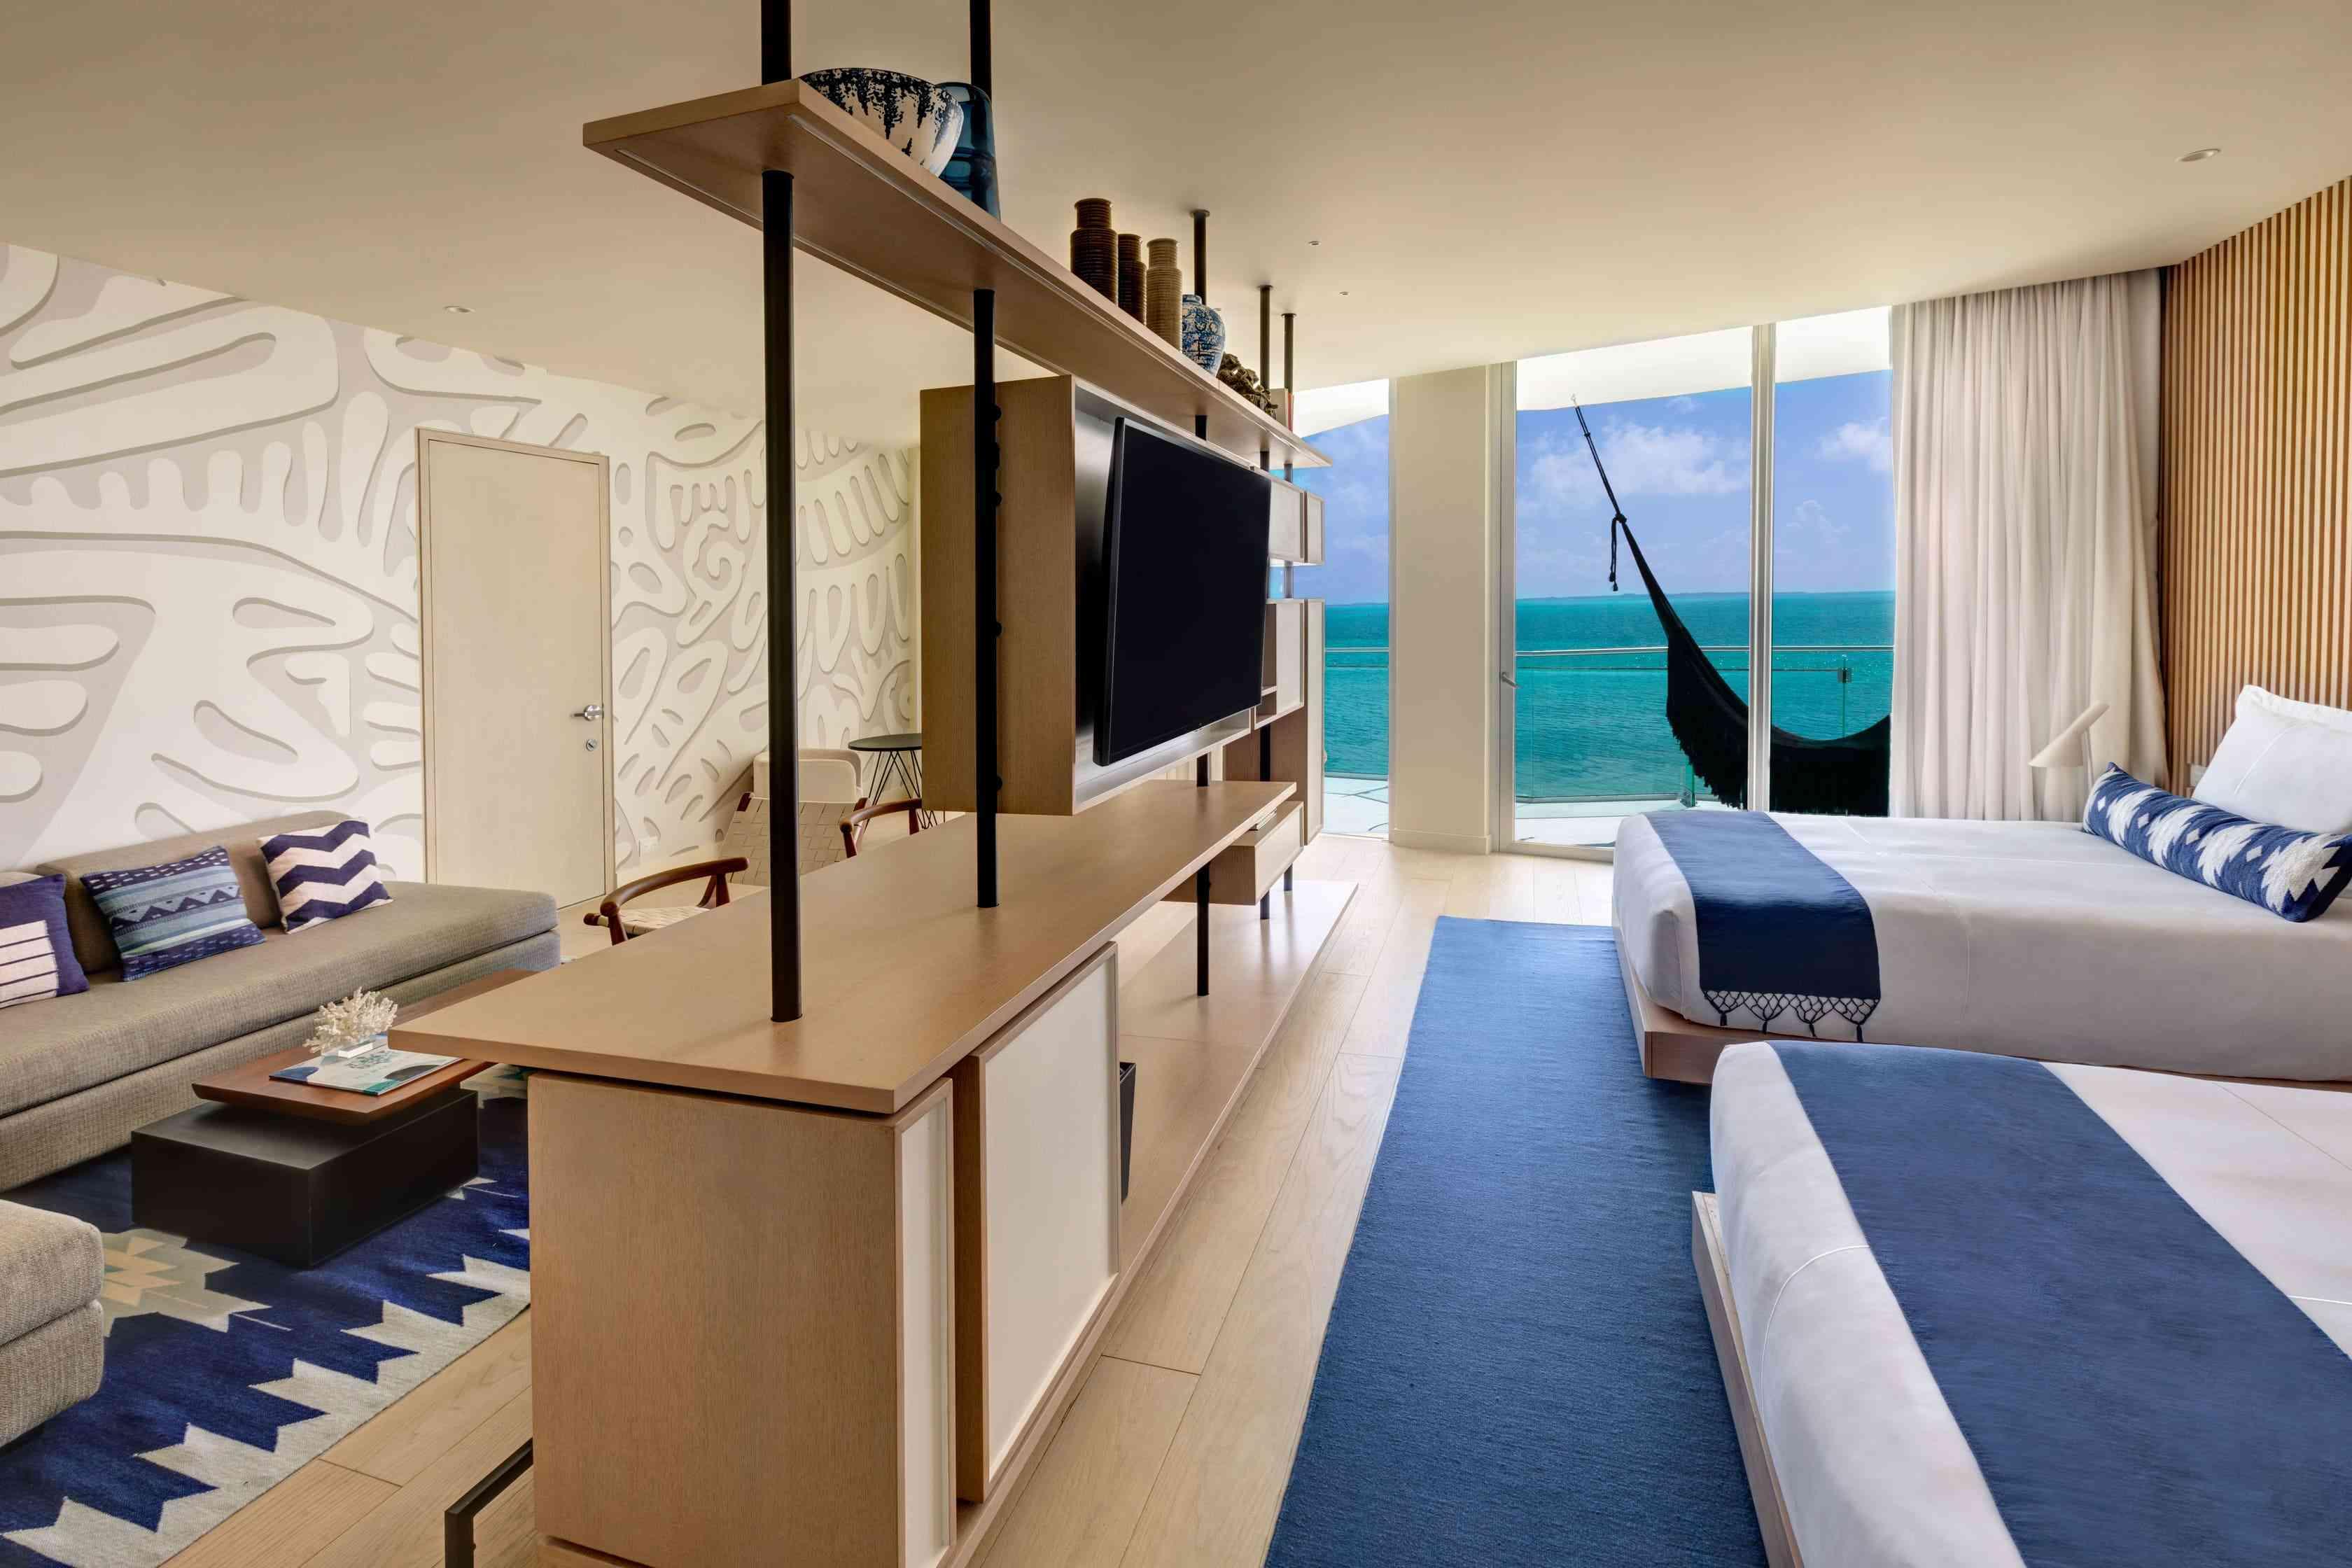 Photo de la suite de luxe à une chambre face à l'océan qui comprend deux lits doubles, une télévision, un bureau qui sépare la chambre du salon et un balcon avec un hamac donnant sur l'océan